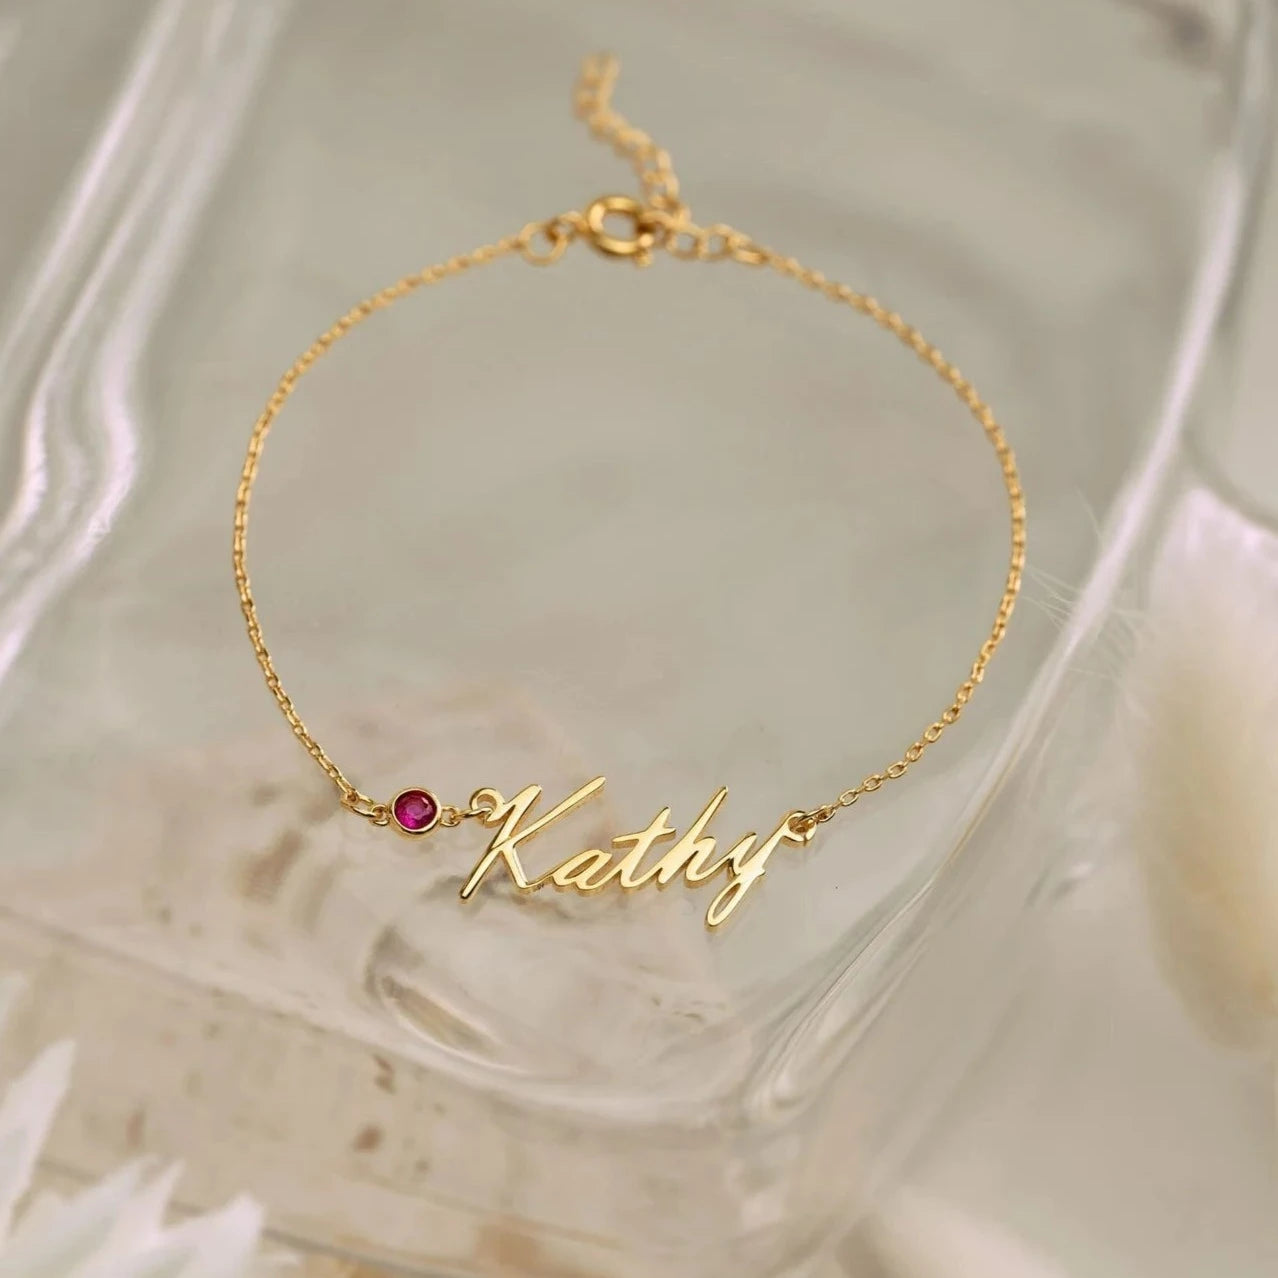 Gold custom bracelet for women. Anniversary gift for Wife in Dubai, Abu Dhabi, UAE. Birthday gift for her, Dubai, Abu Dhabi, UAE.